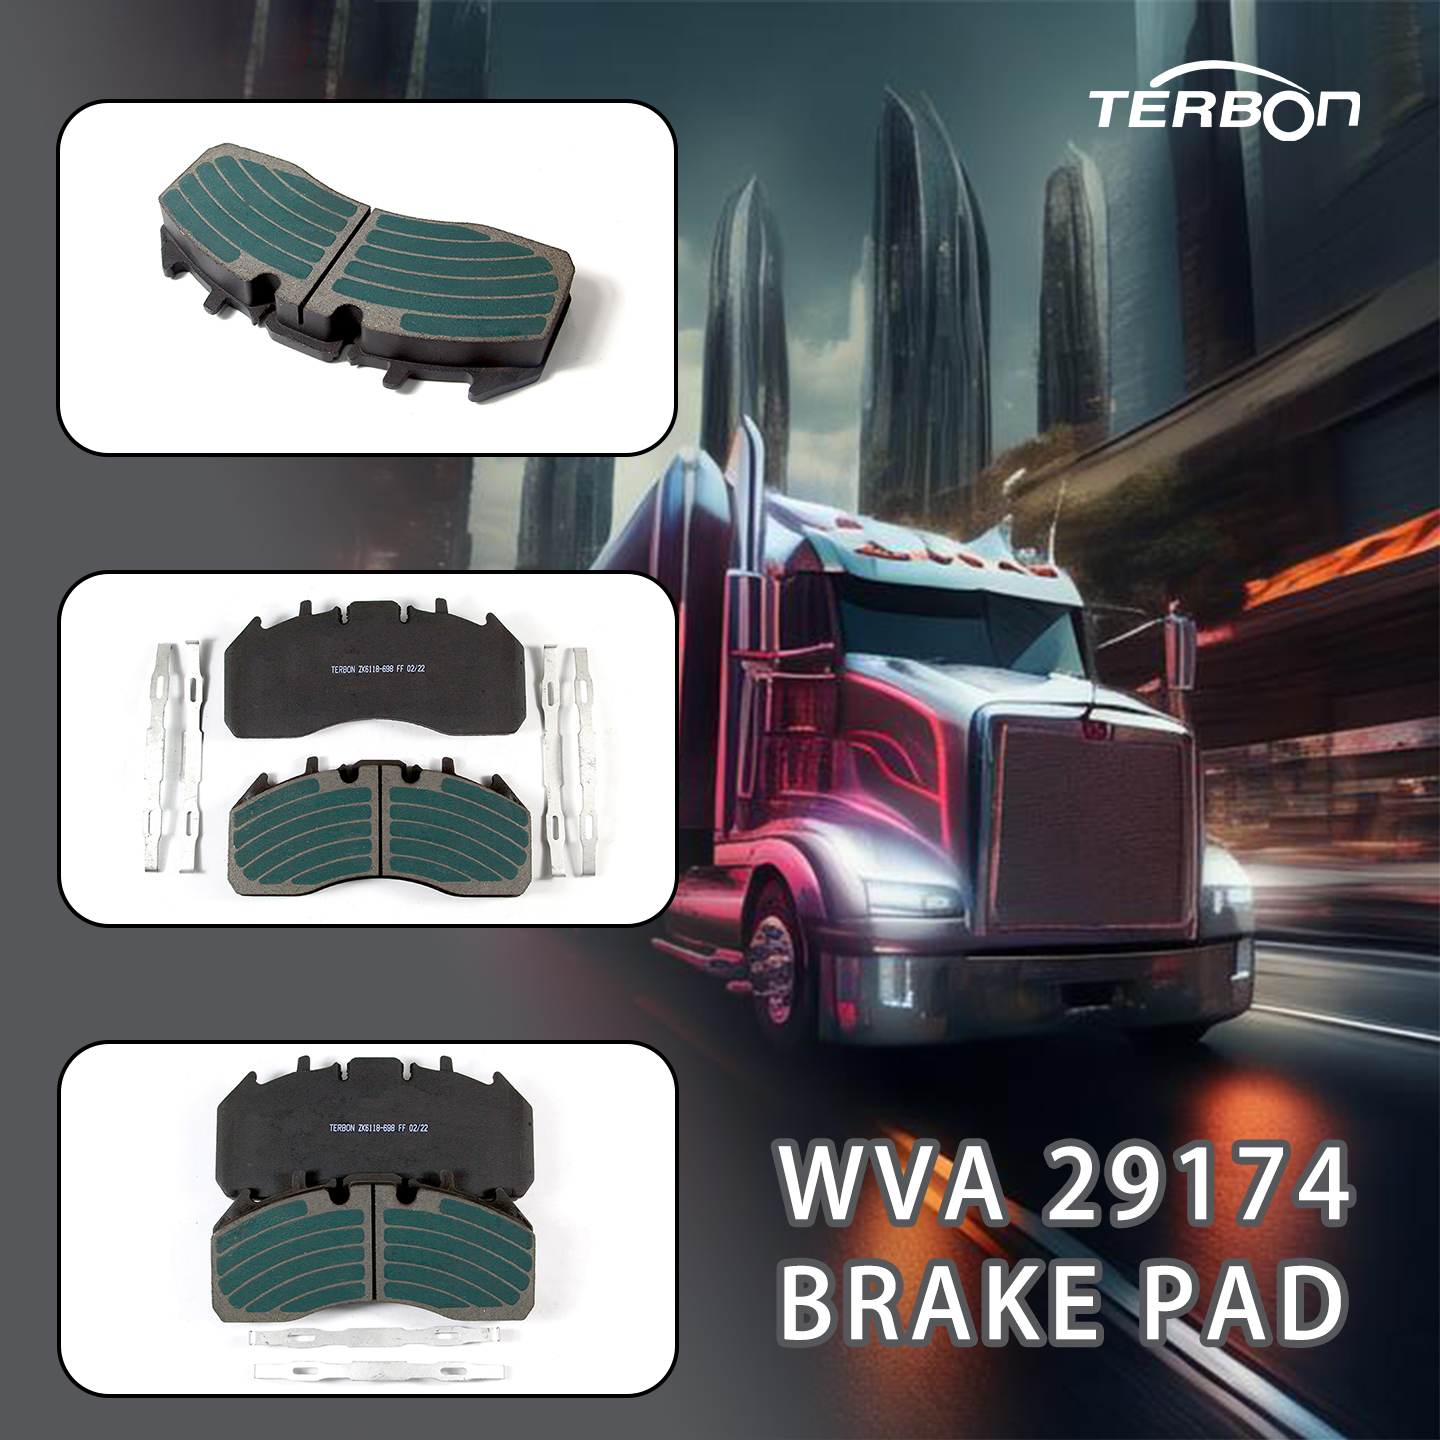 नया उत्पाद रिलीज़: आपके हेवी-ड्यूटी ट्रकों के लिए टेरबॉन उच्च गुणवत्ता वाले WVA 29174 ब्रेक पैड